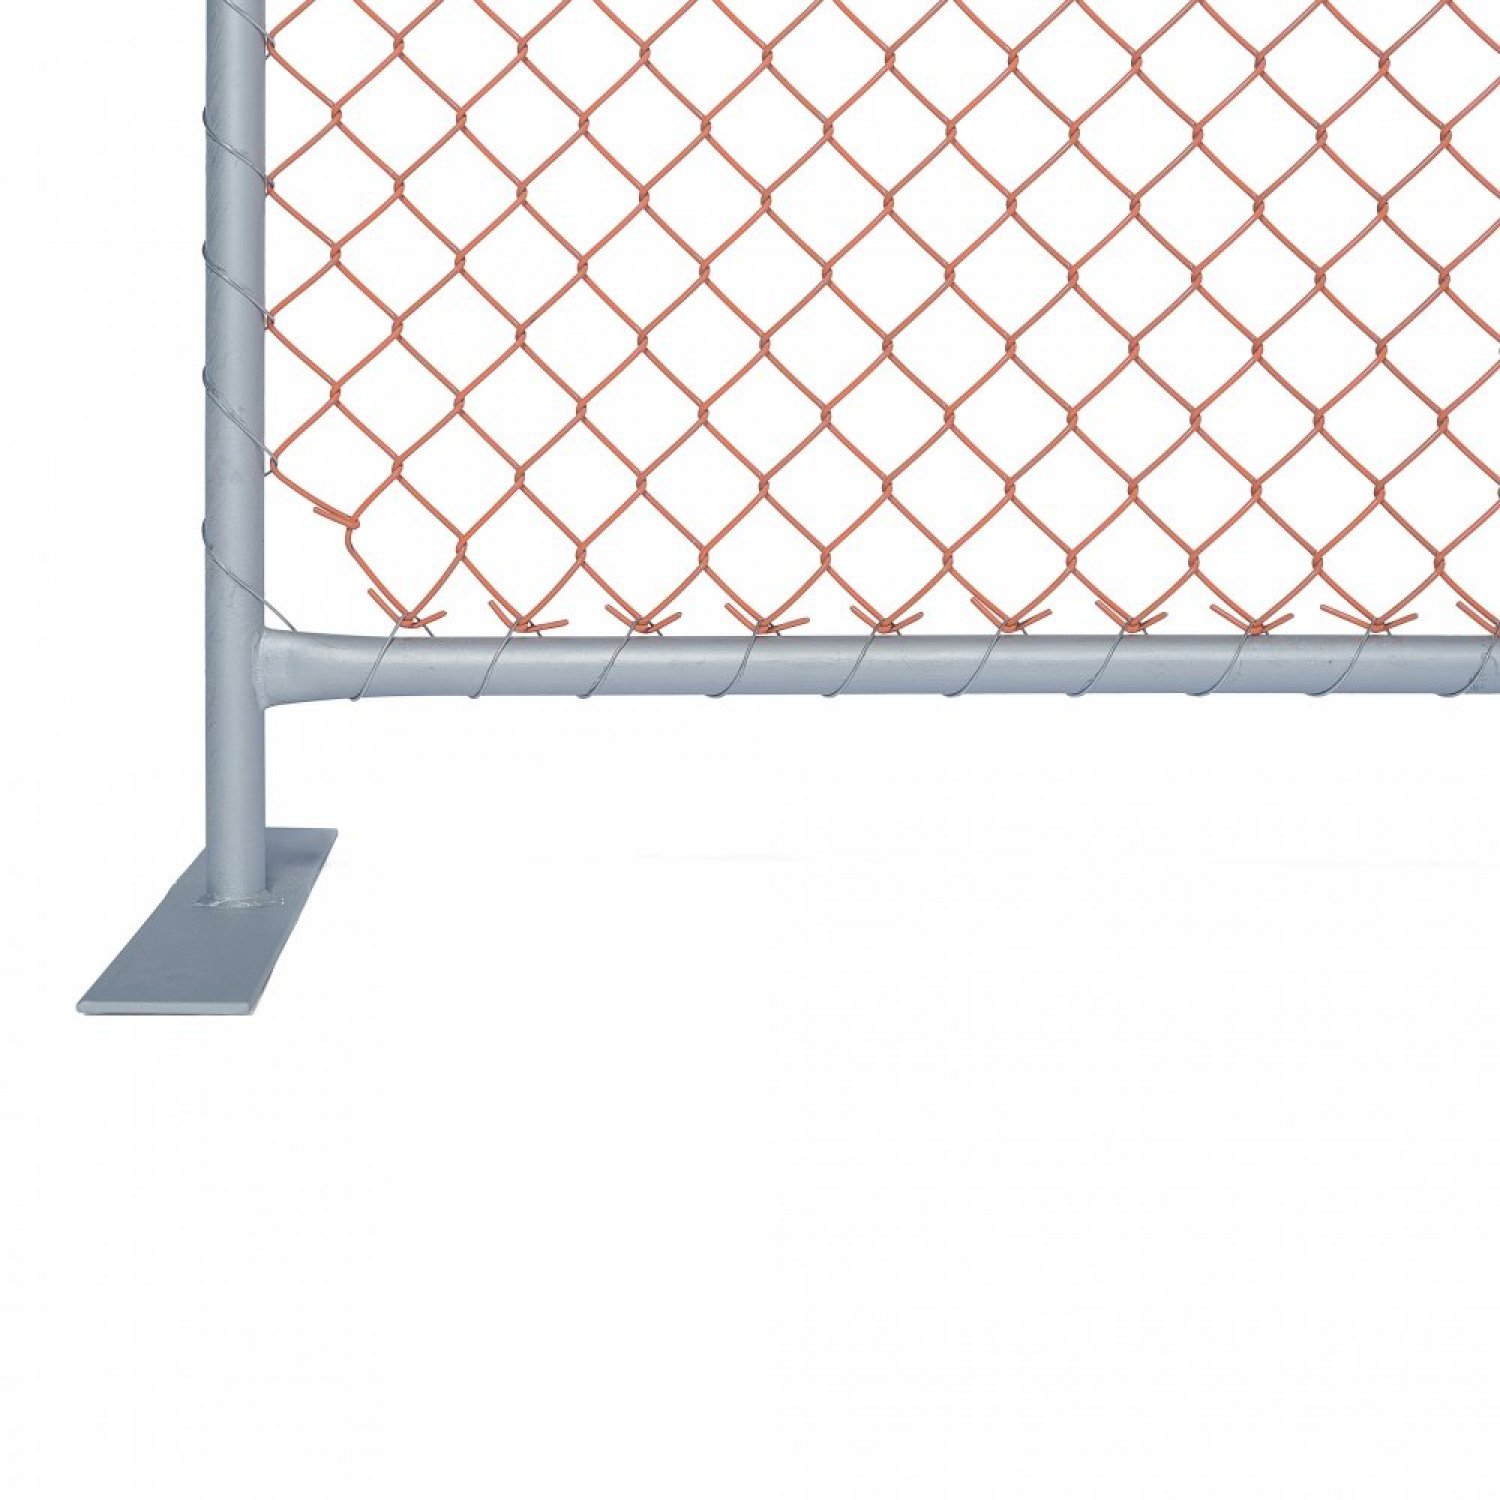 fencing standing corner 